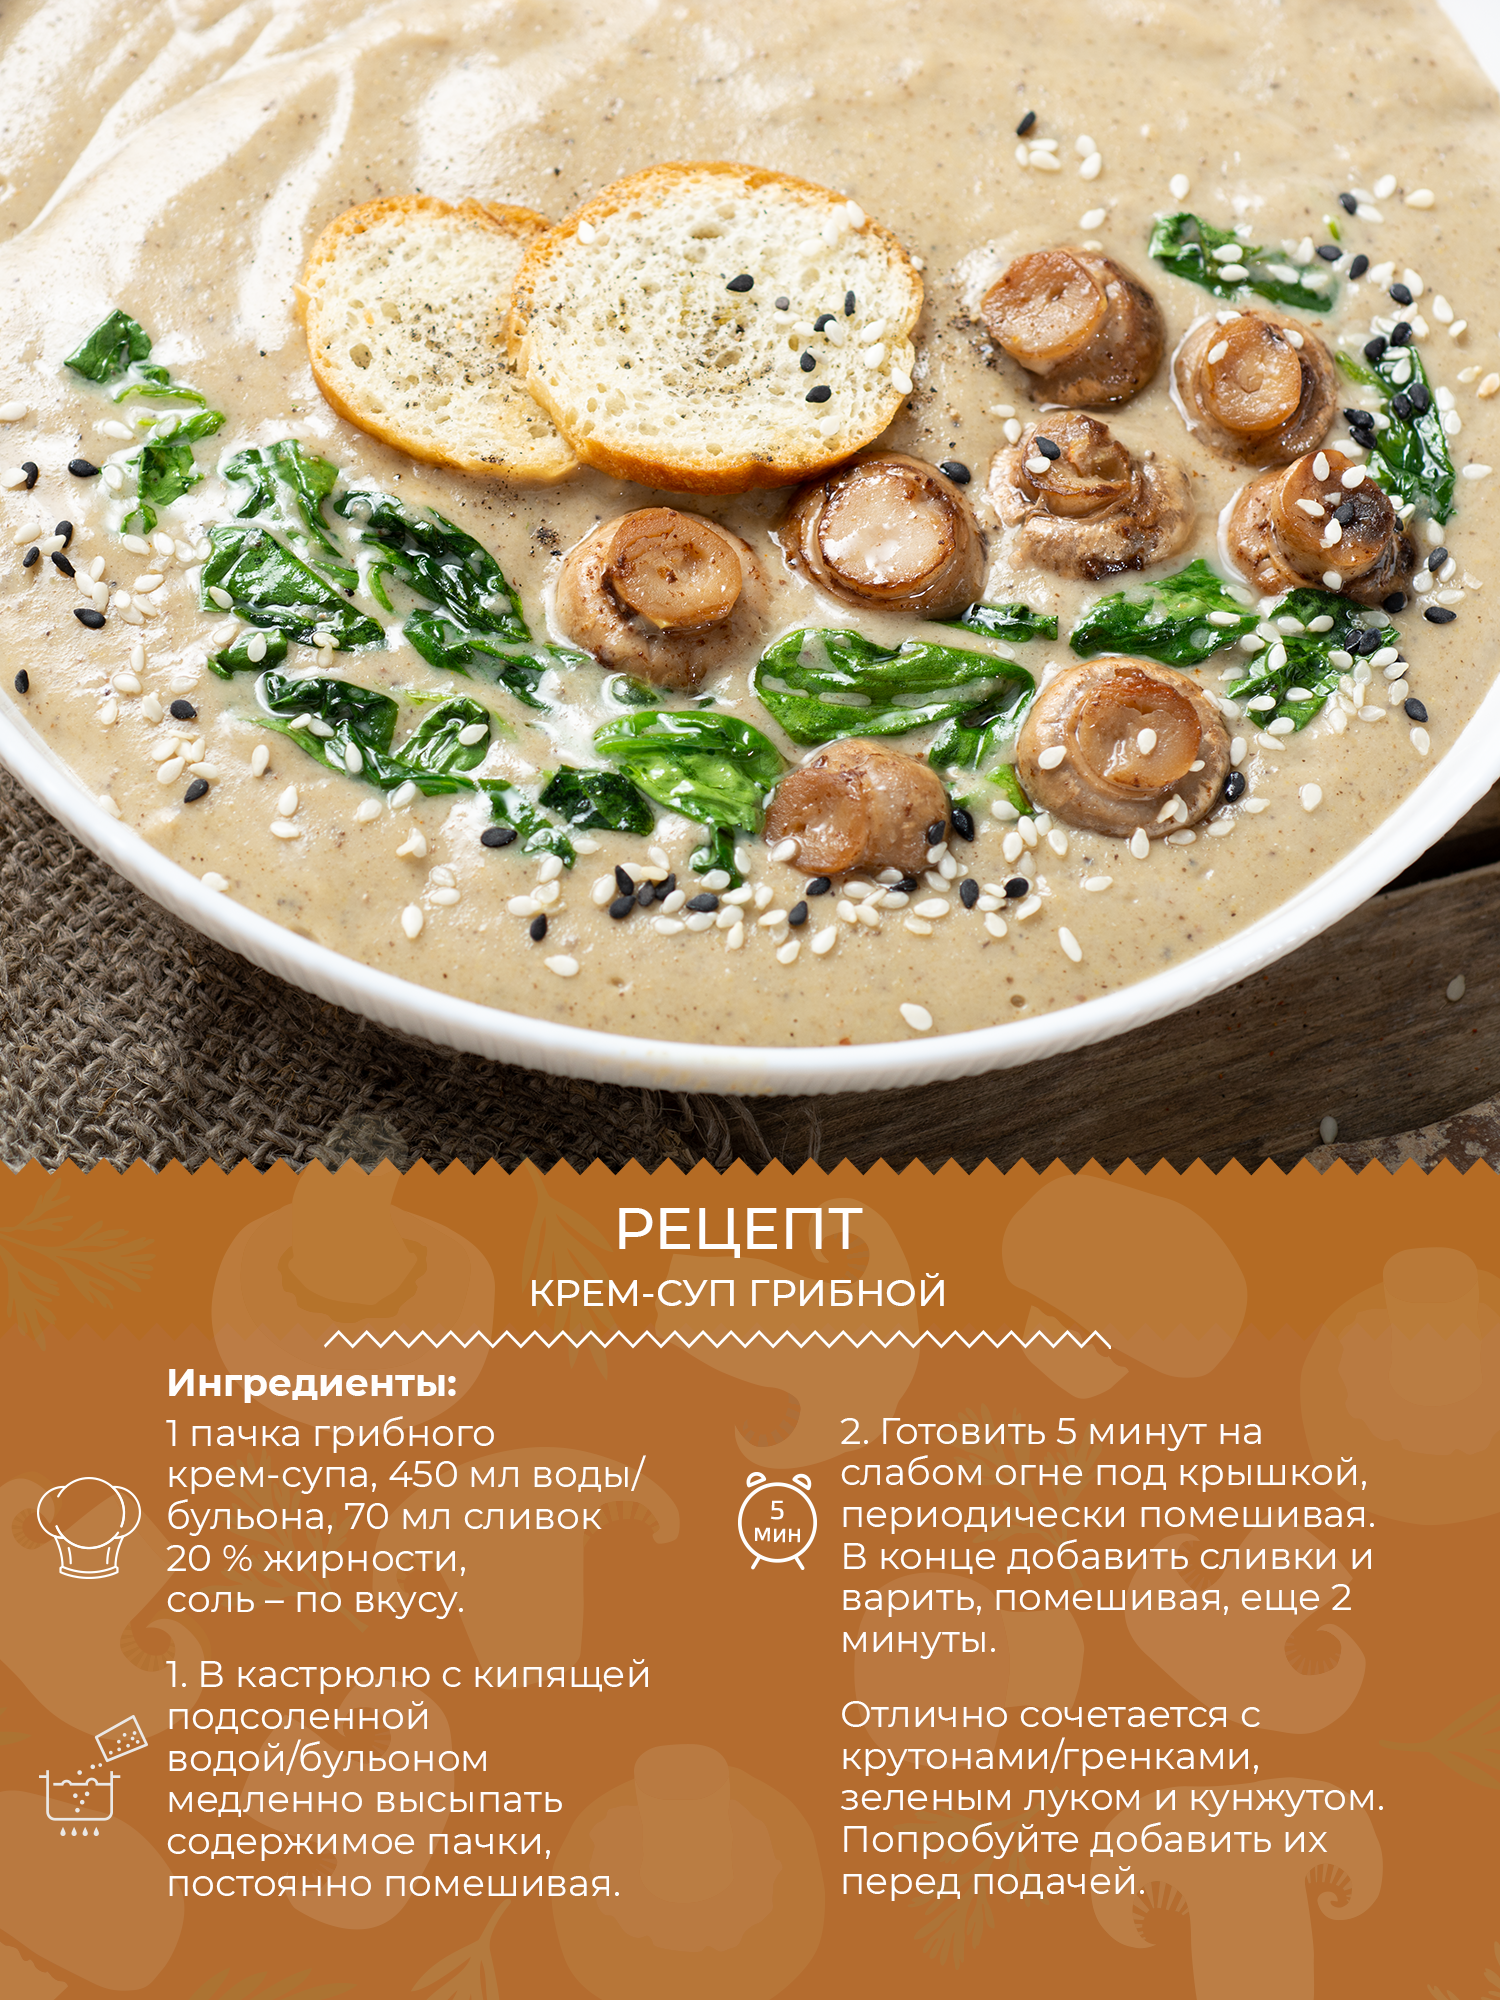 Крем-суп грибной нежный с нутом Yelli 70 г / Смесь для приготовления первого блюда